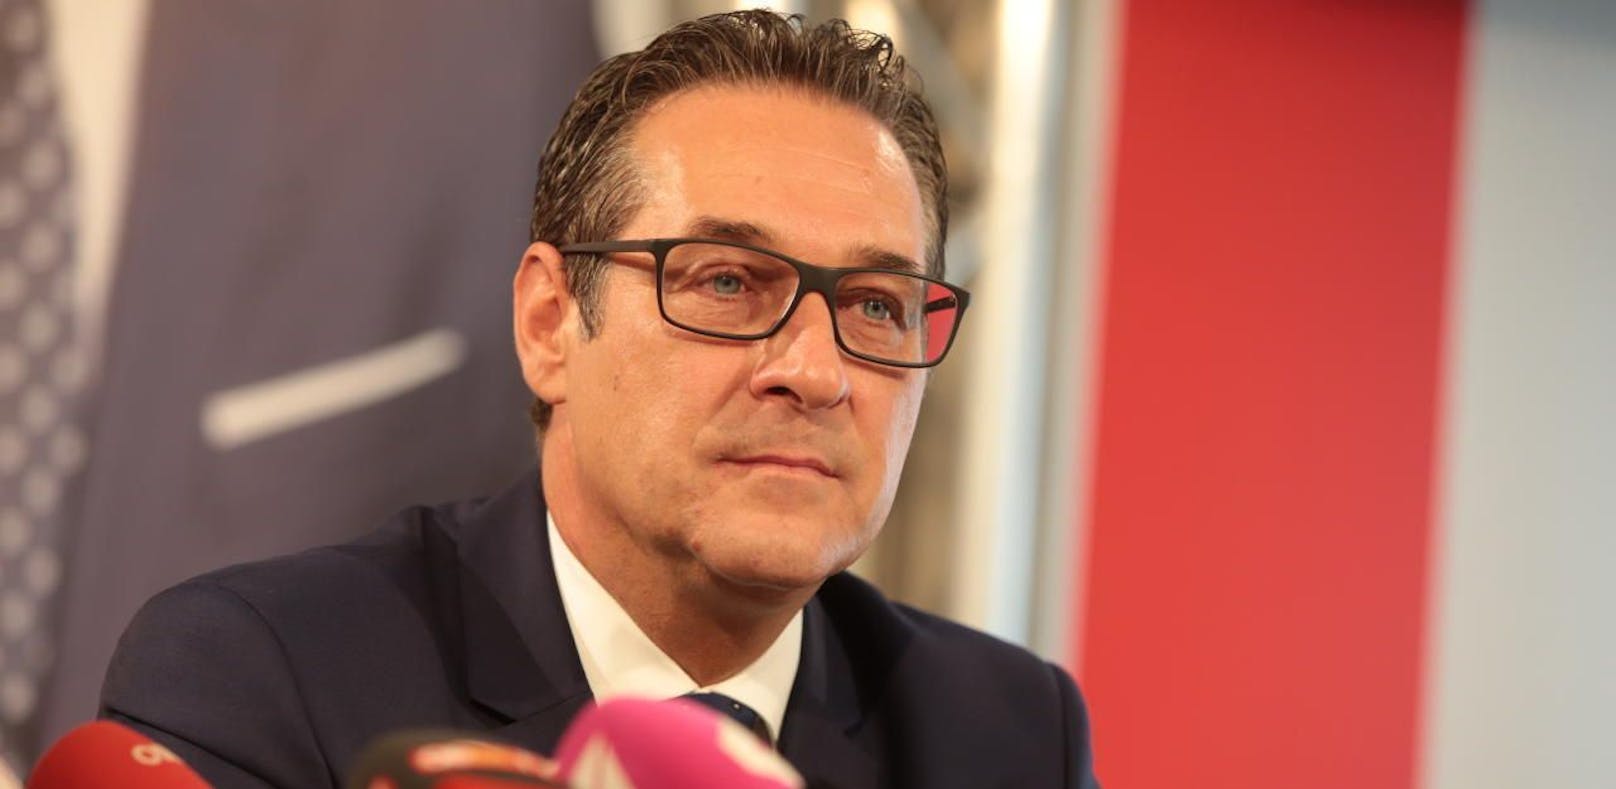 FPÖ-Chef Heinz-Christian Strache sank auf Platz 9.